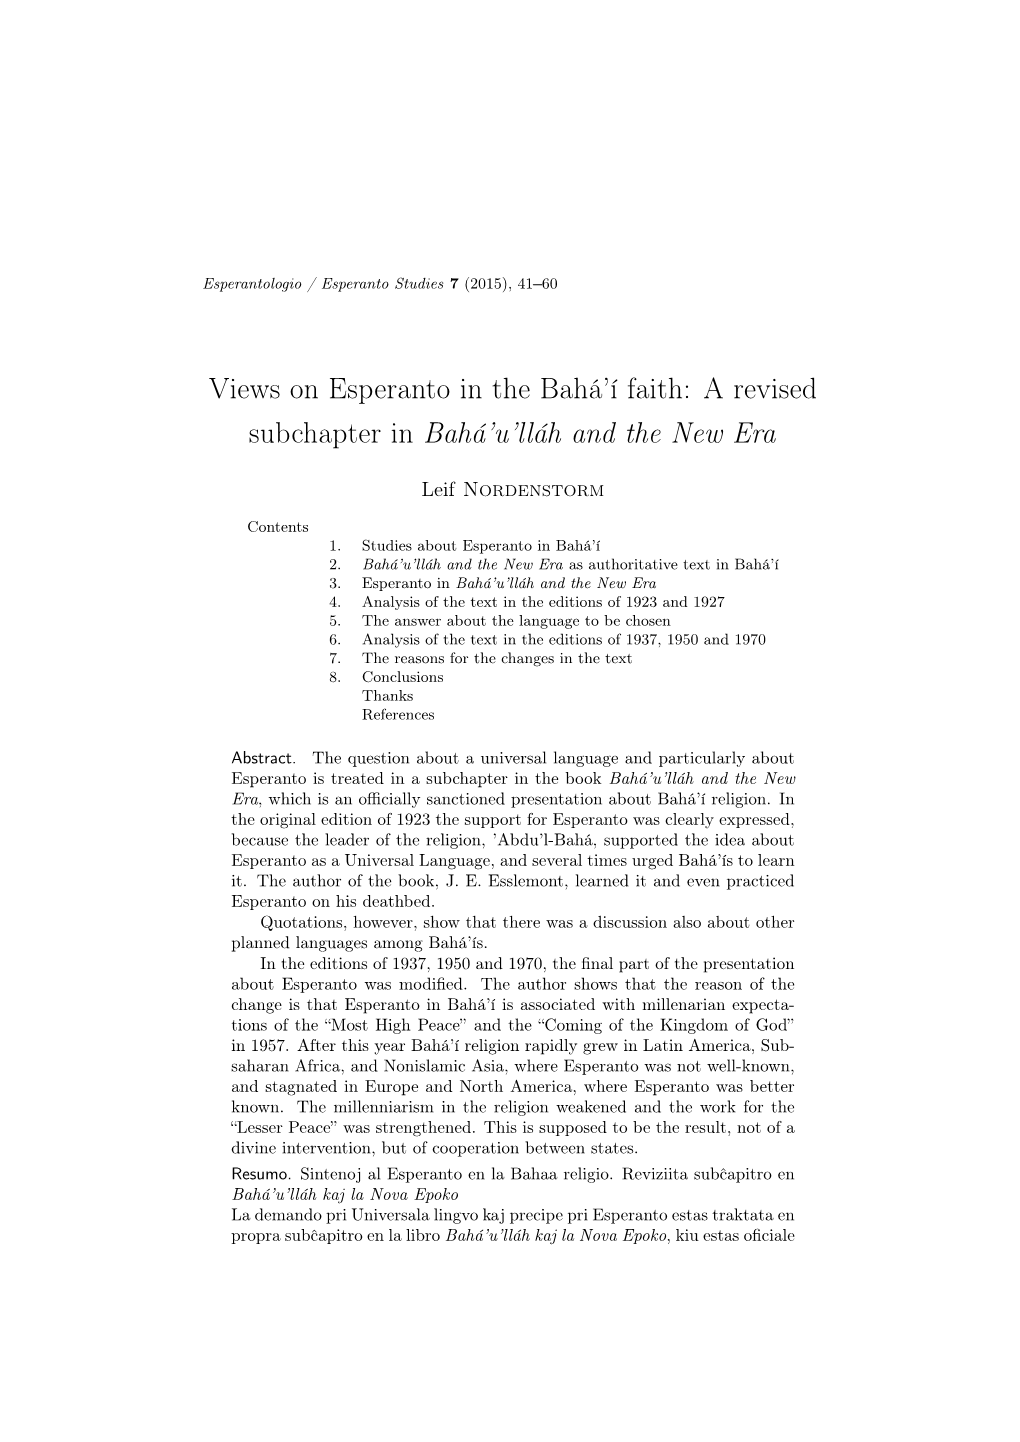 Views on Esperanto in the Bahá'í Faith